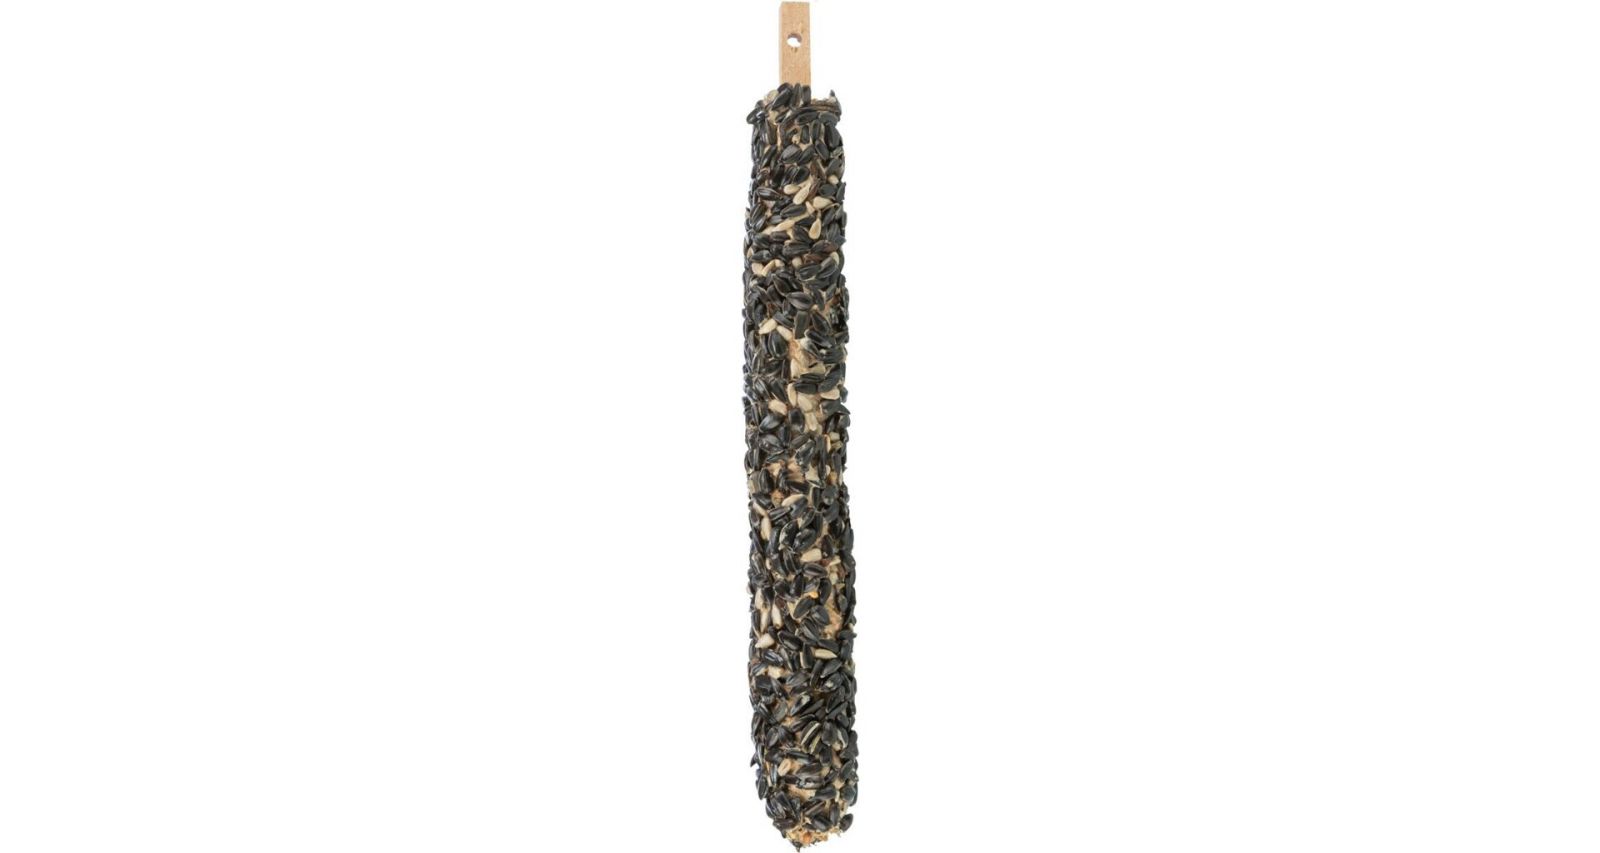 Krmná tyč se slunečnicovými semínky XL pro venkovní ptactvo, 30 cm, 180 g TRIXIE